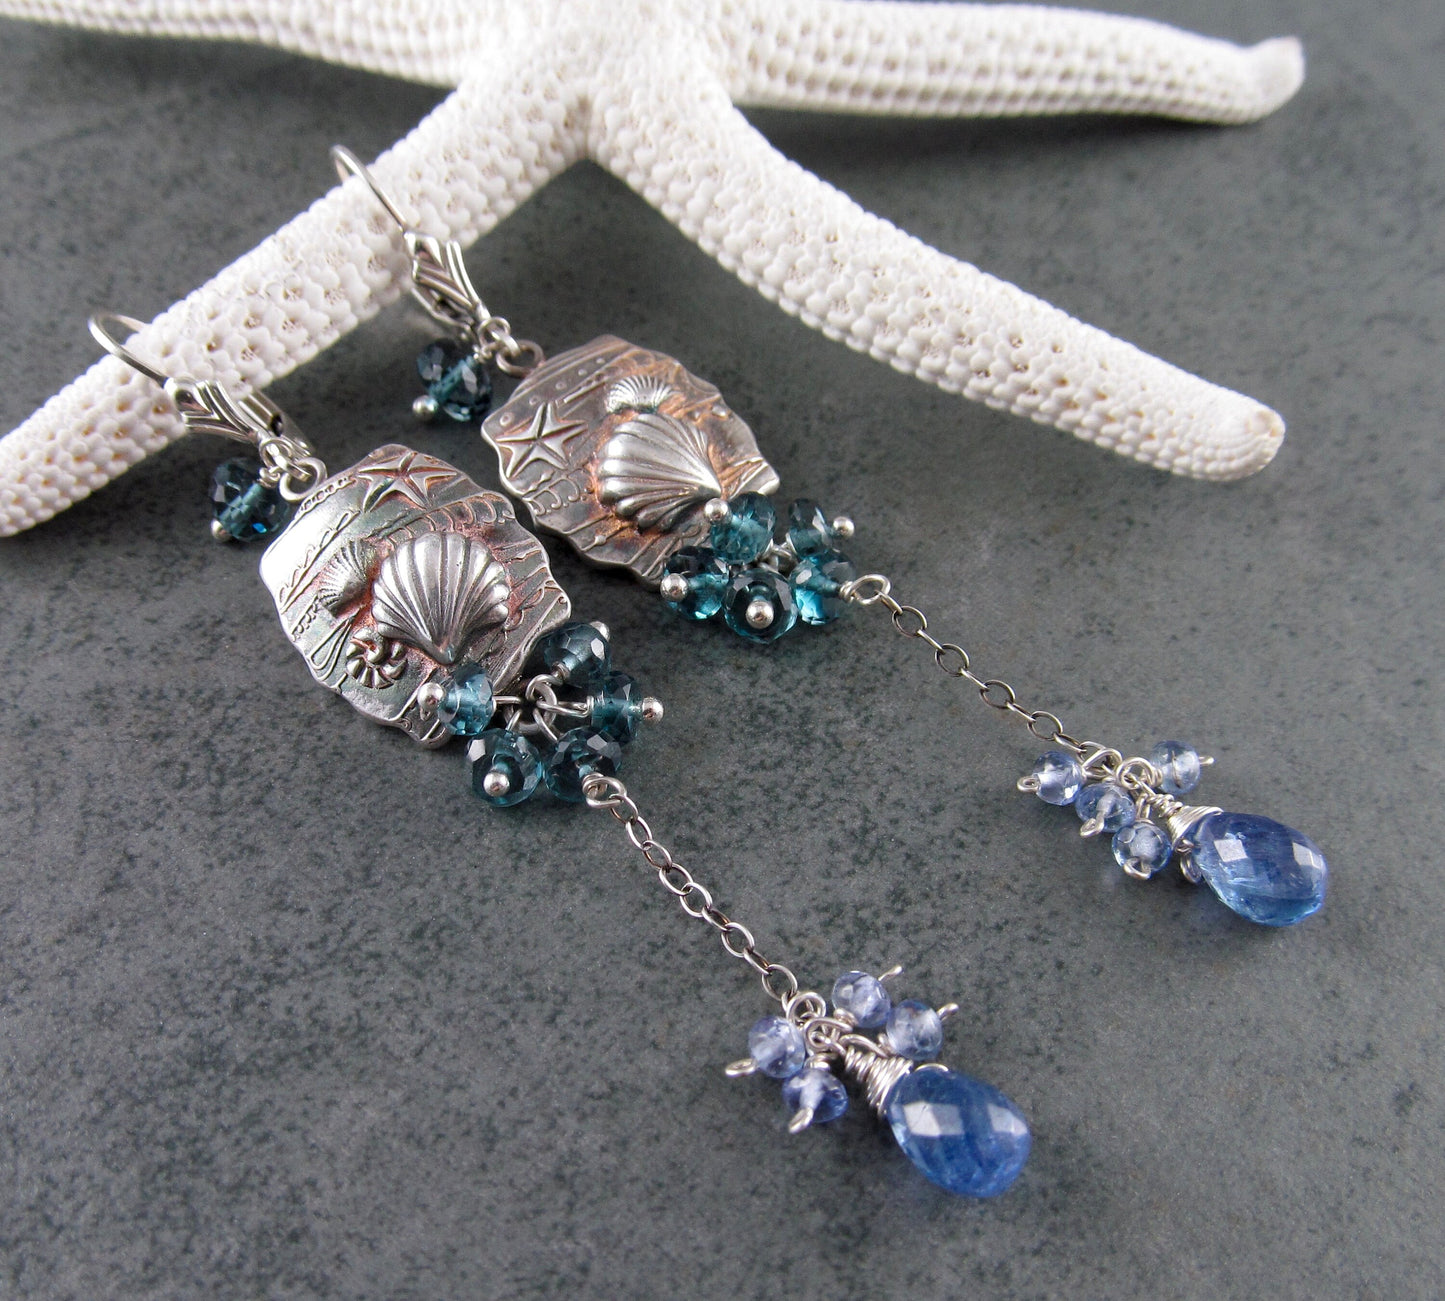 Seascape earrings, handmade recycled fine silver shell earrings with London blue topaz & tanzanite-OOAK beach earrings